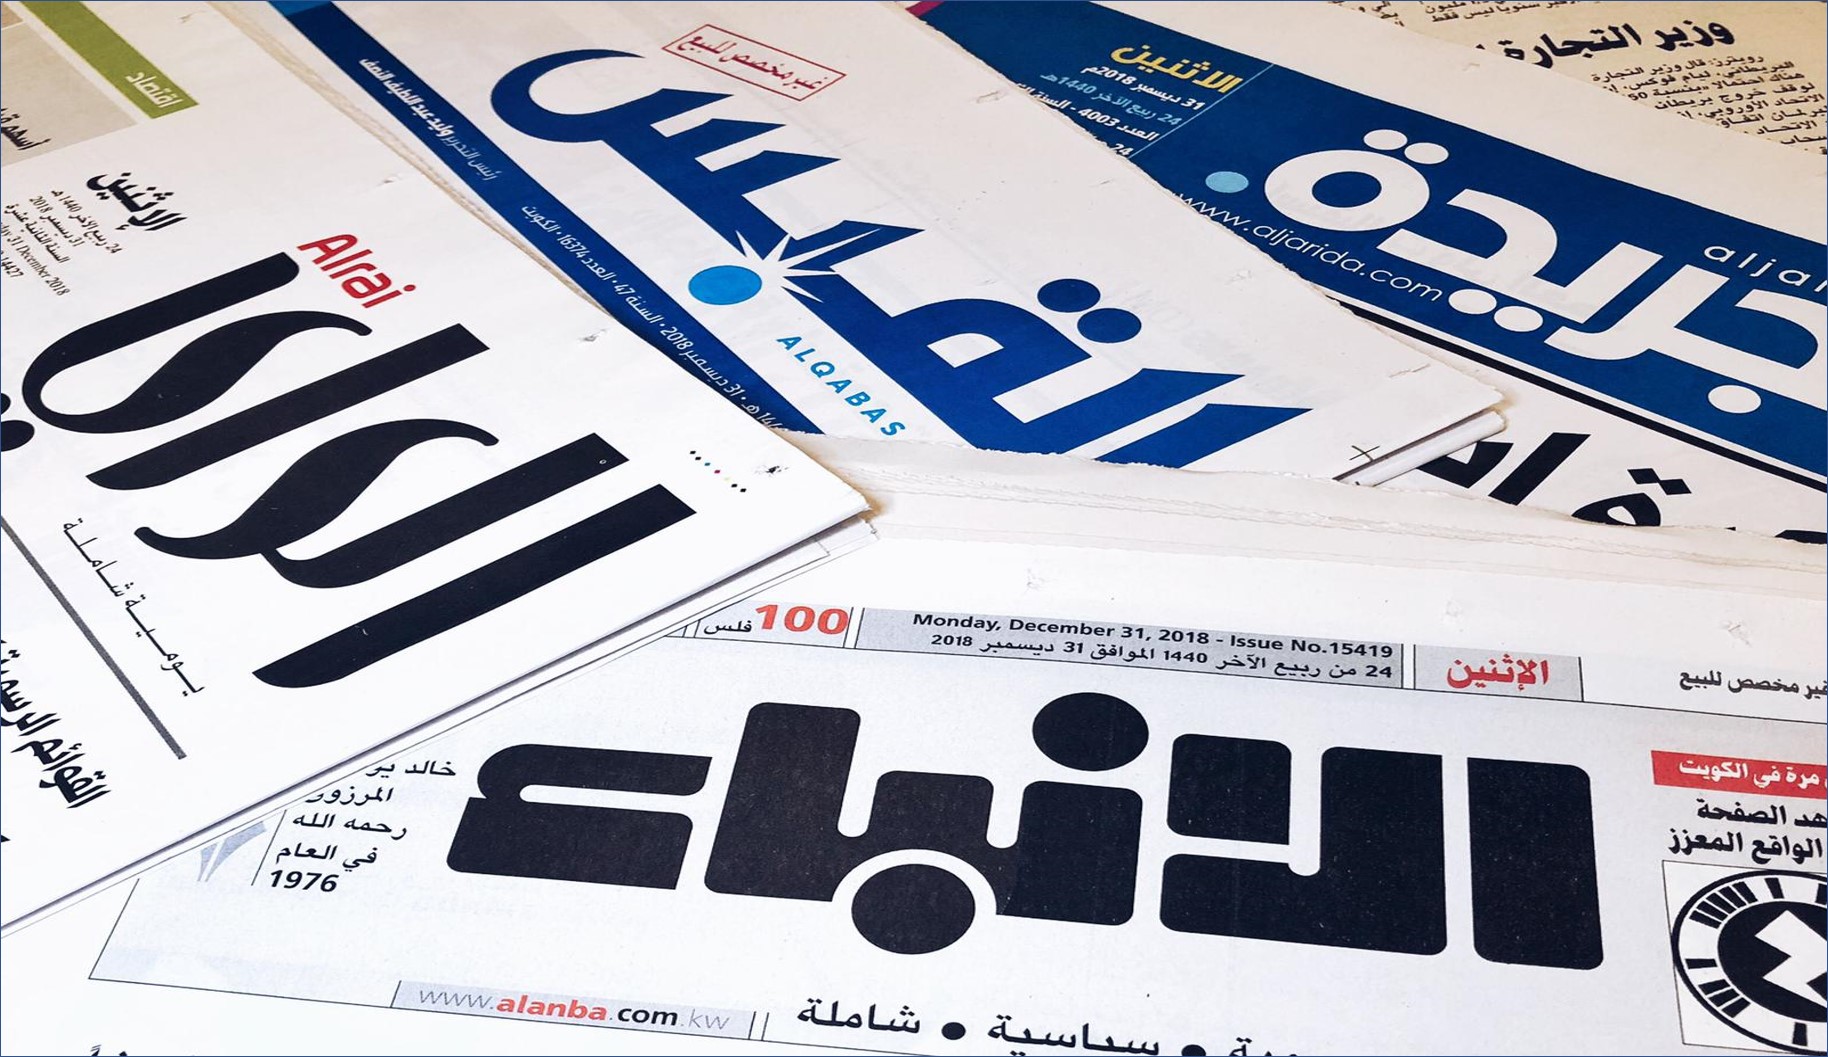 وظائف شاغرة في الصحف الكويتية لمختلف التخصصات بتاريخ اليوم